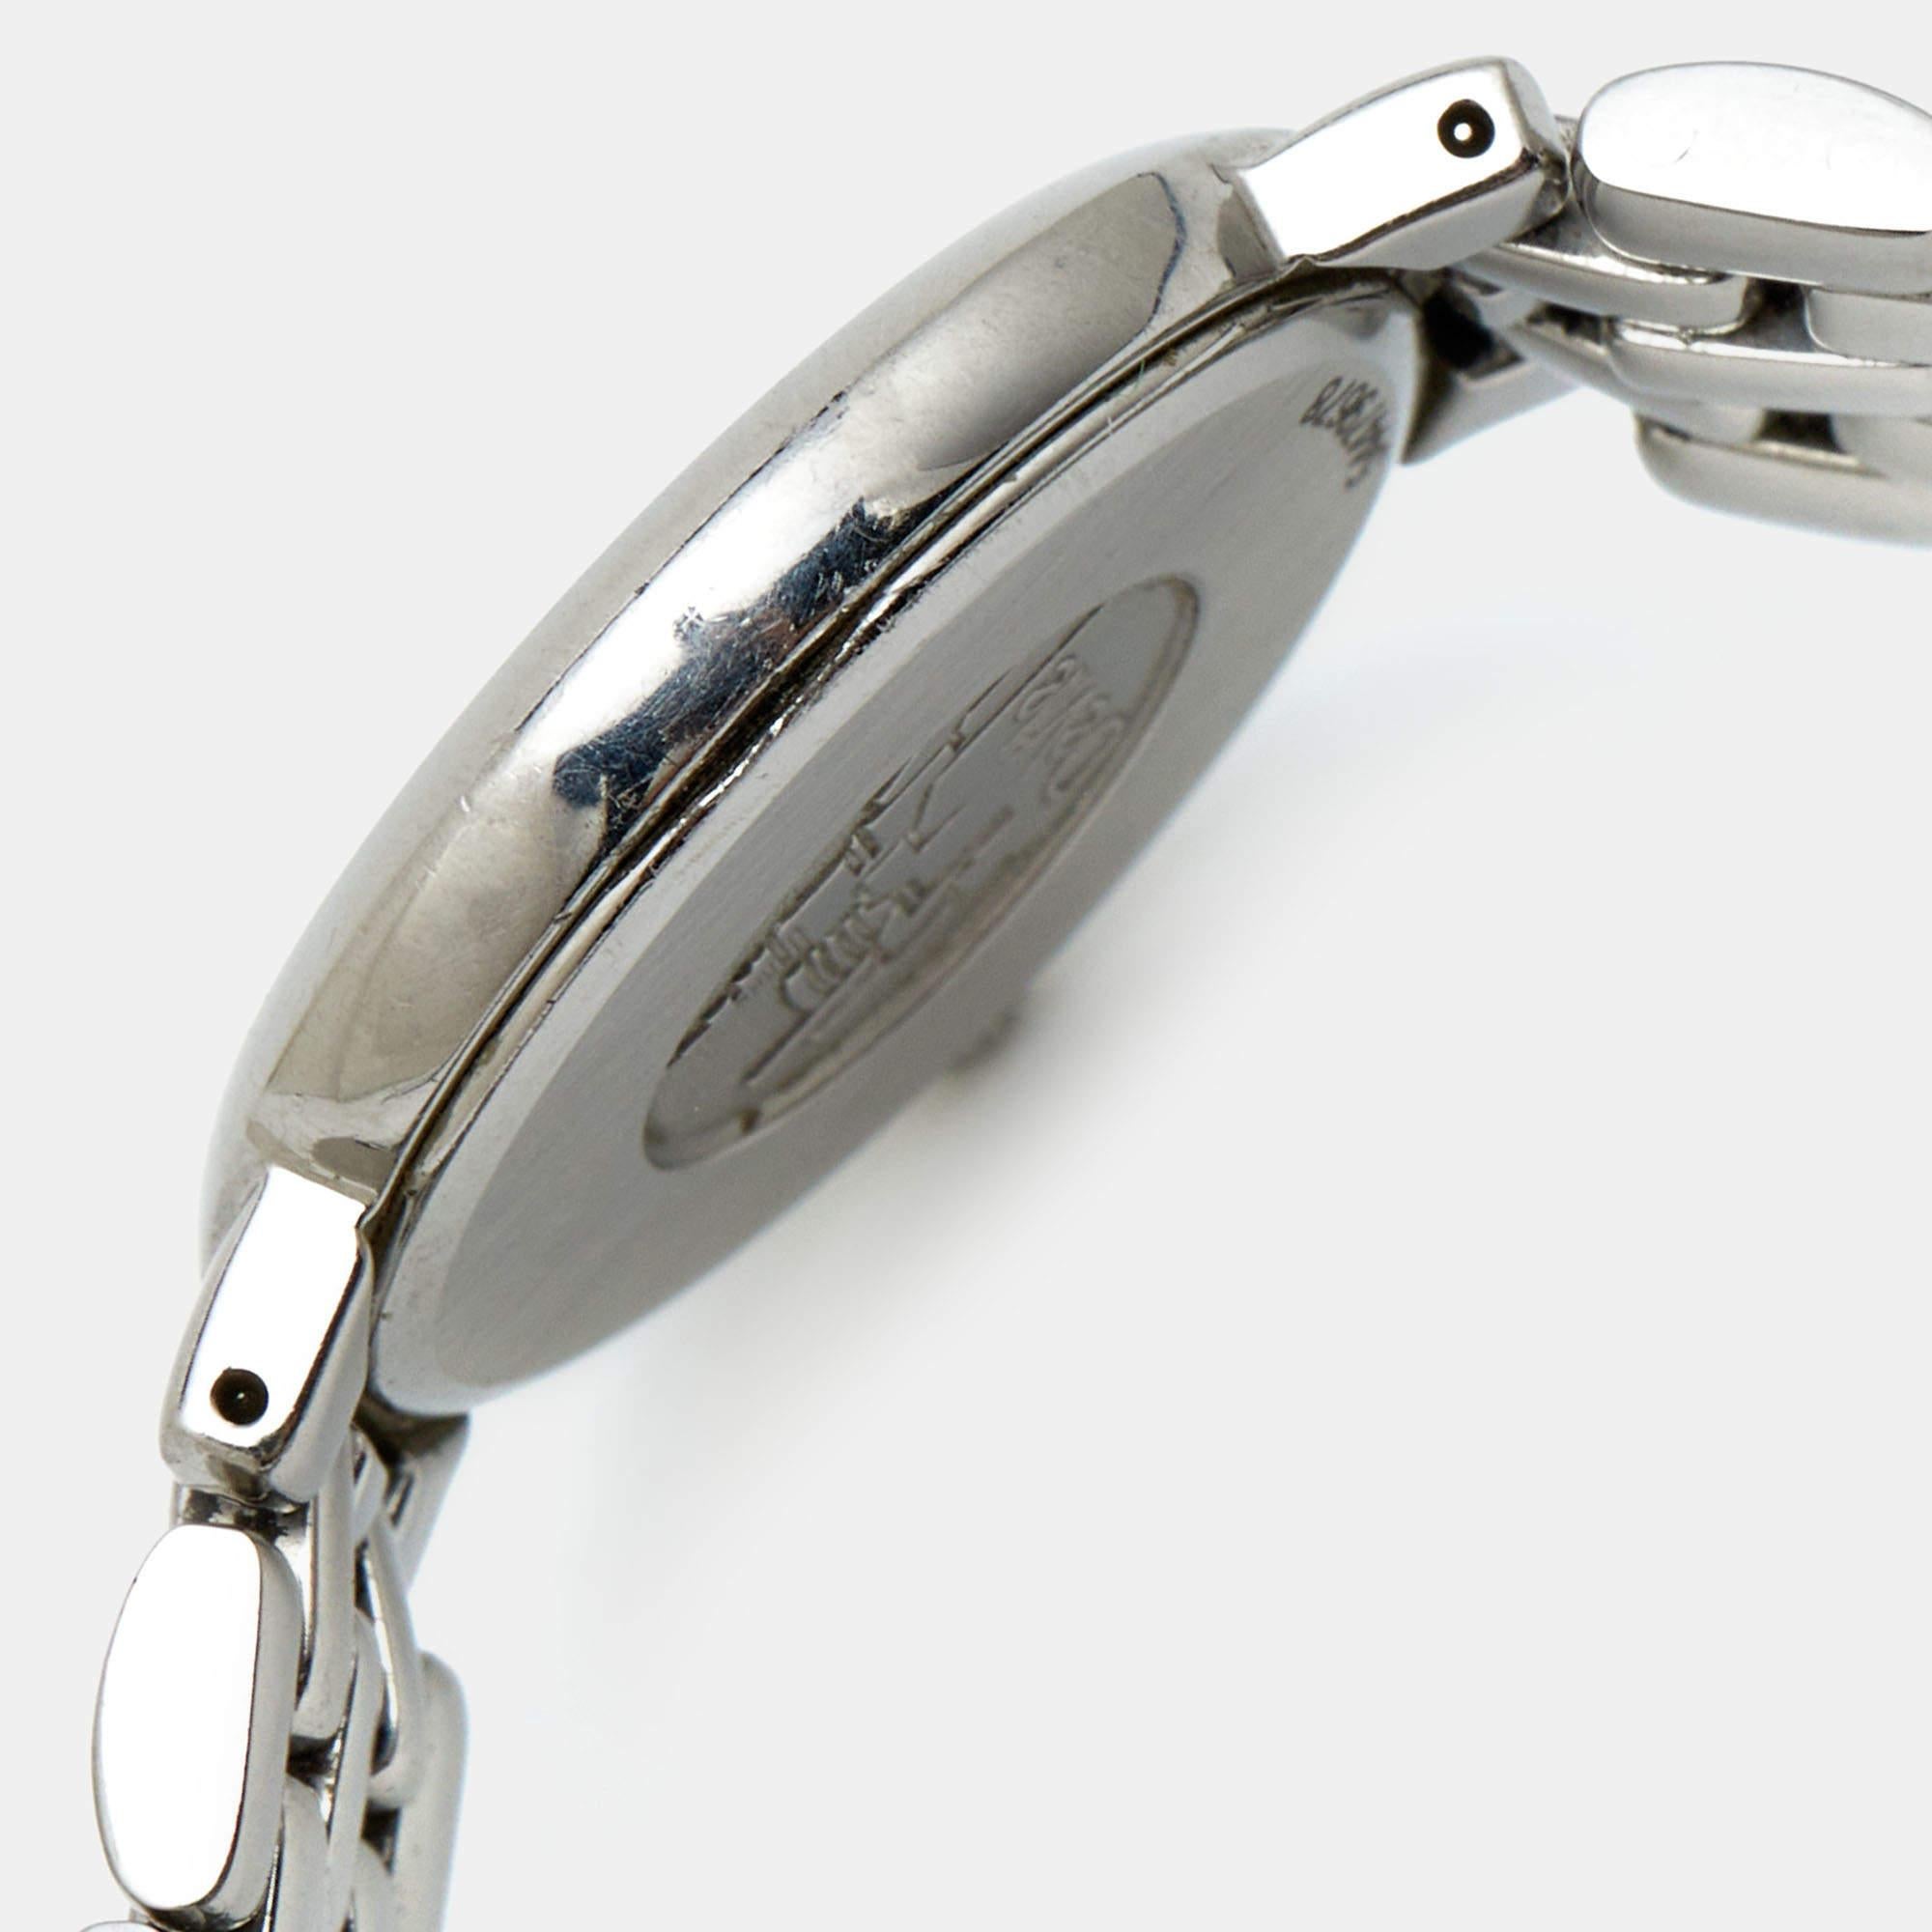 Erleben Sie den Inbegriff von Luxus mit einer echten Omega De Ville Uhr. Die fachmännische Verarbeitung, das zeitlose Design, die bequeme Passform und der vielseitige Look machen ihn zum ultimativen Symbol für Raffinesse.

